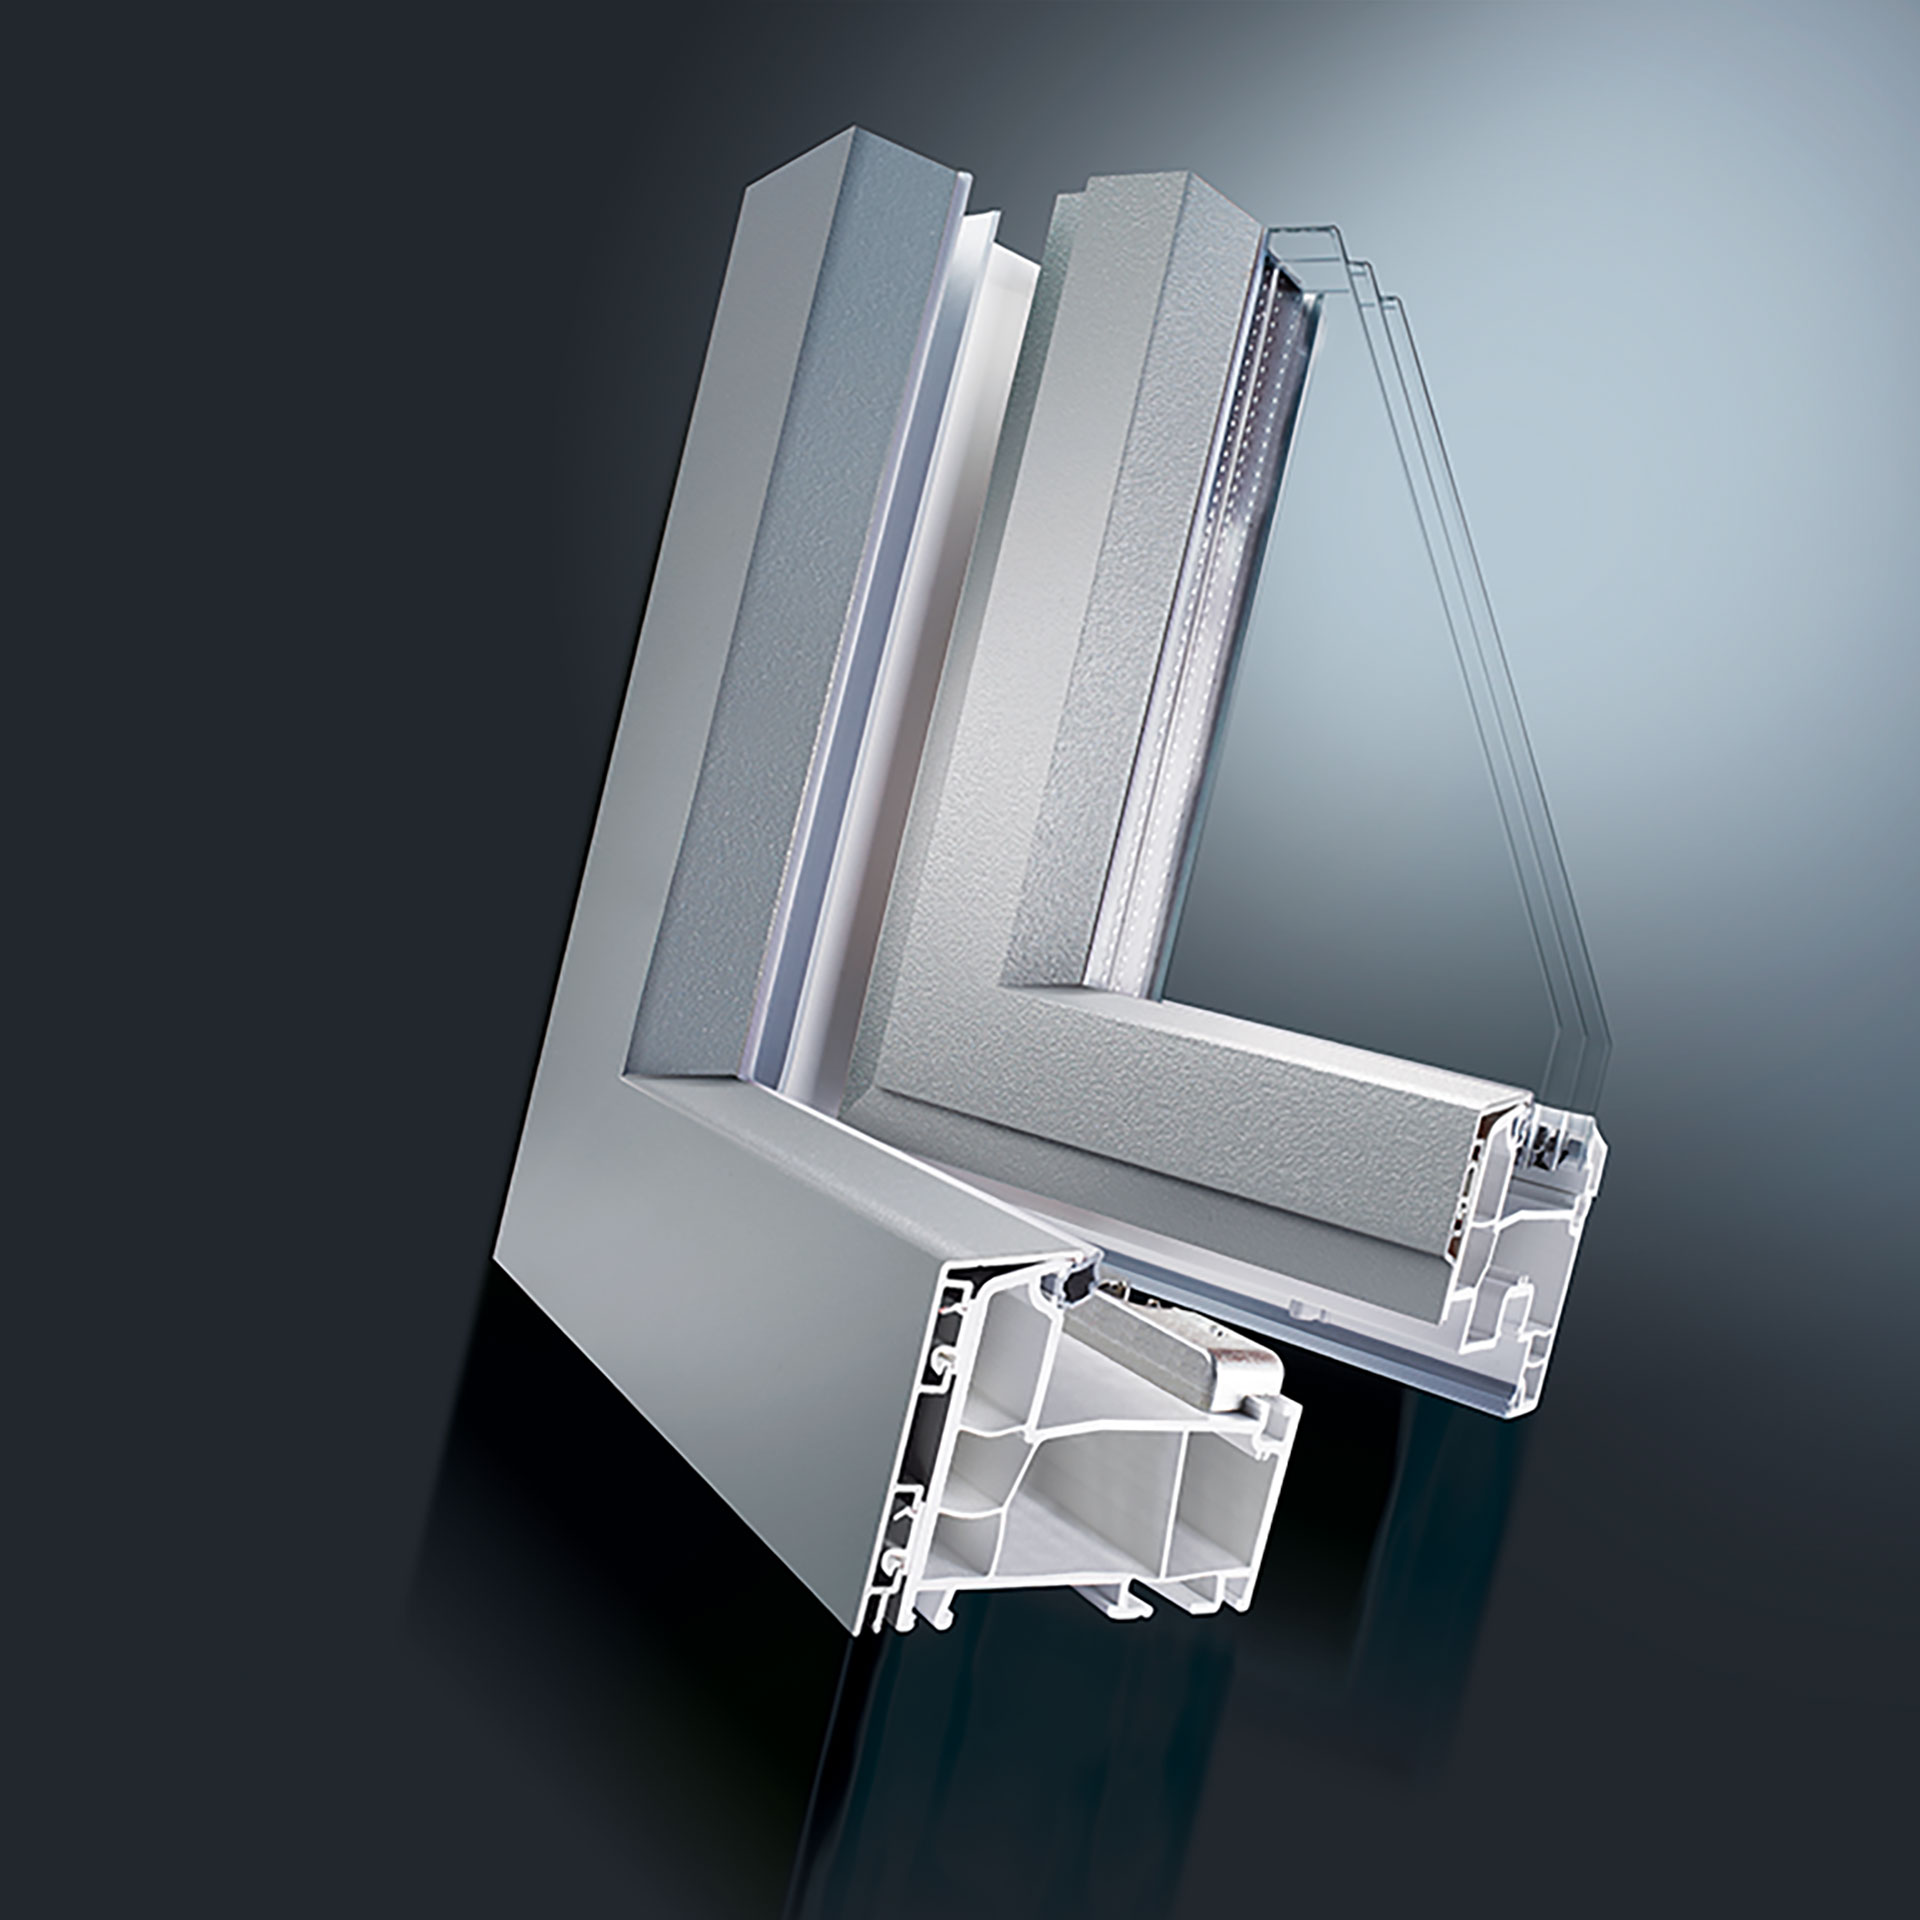 Het DECCO PVC-U/aluminium systeem combineert de voordelen van beide materialen. De oplossing kan snel en eenvoudig door de raamfabrikant worden geïnstalleerd. Er is geen aangepaste productie nodig. Het raam blijft in de standaard productielijn.